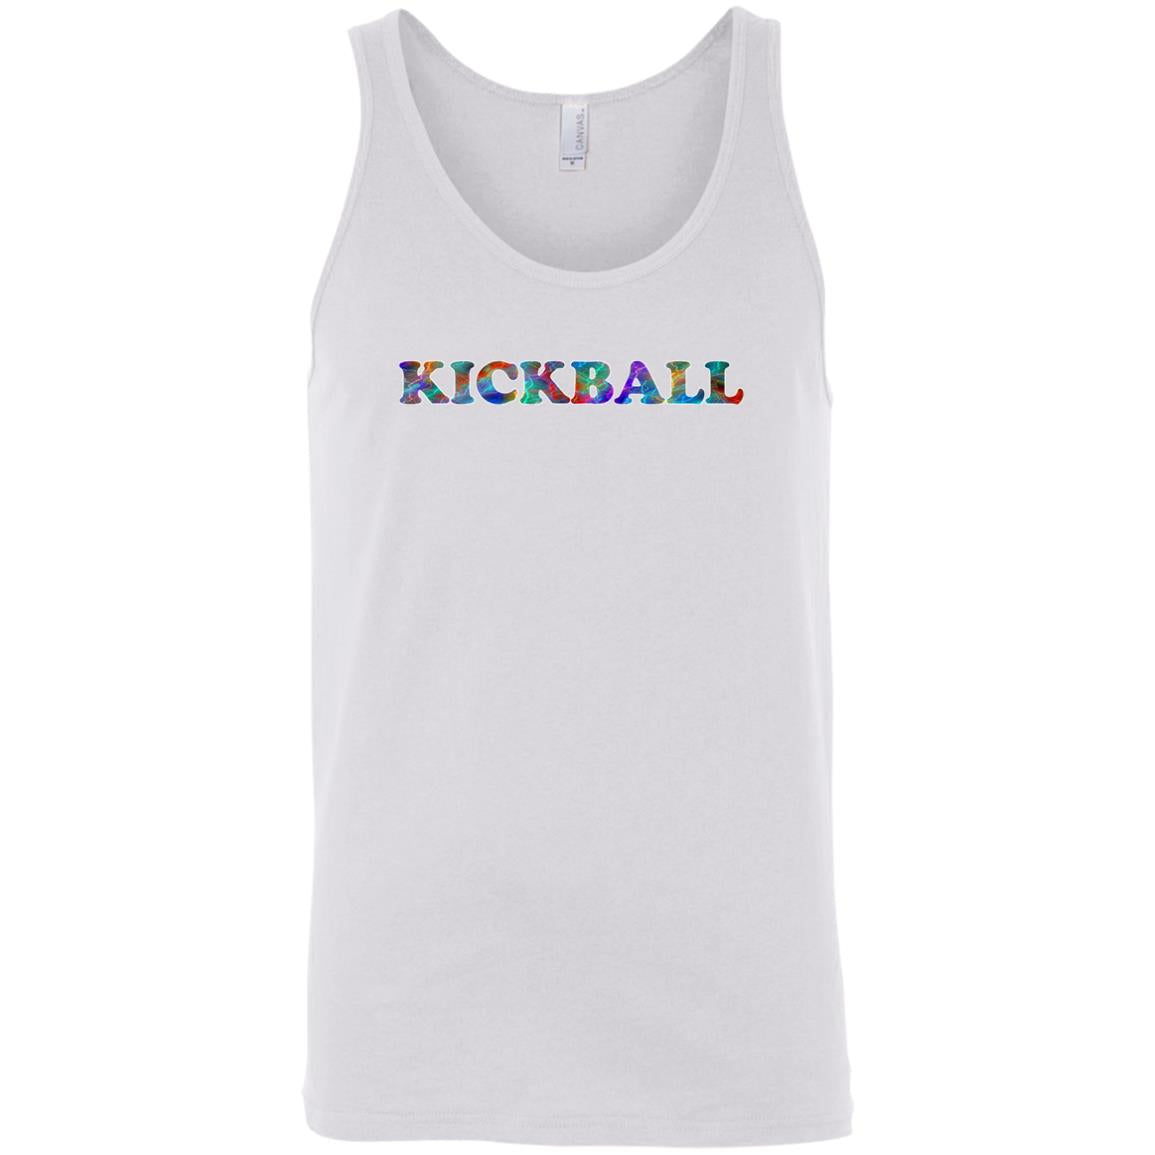 Kickball Sleeveless Unisex Tee